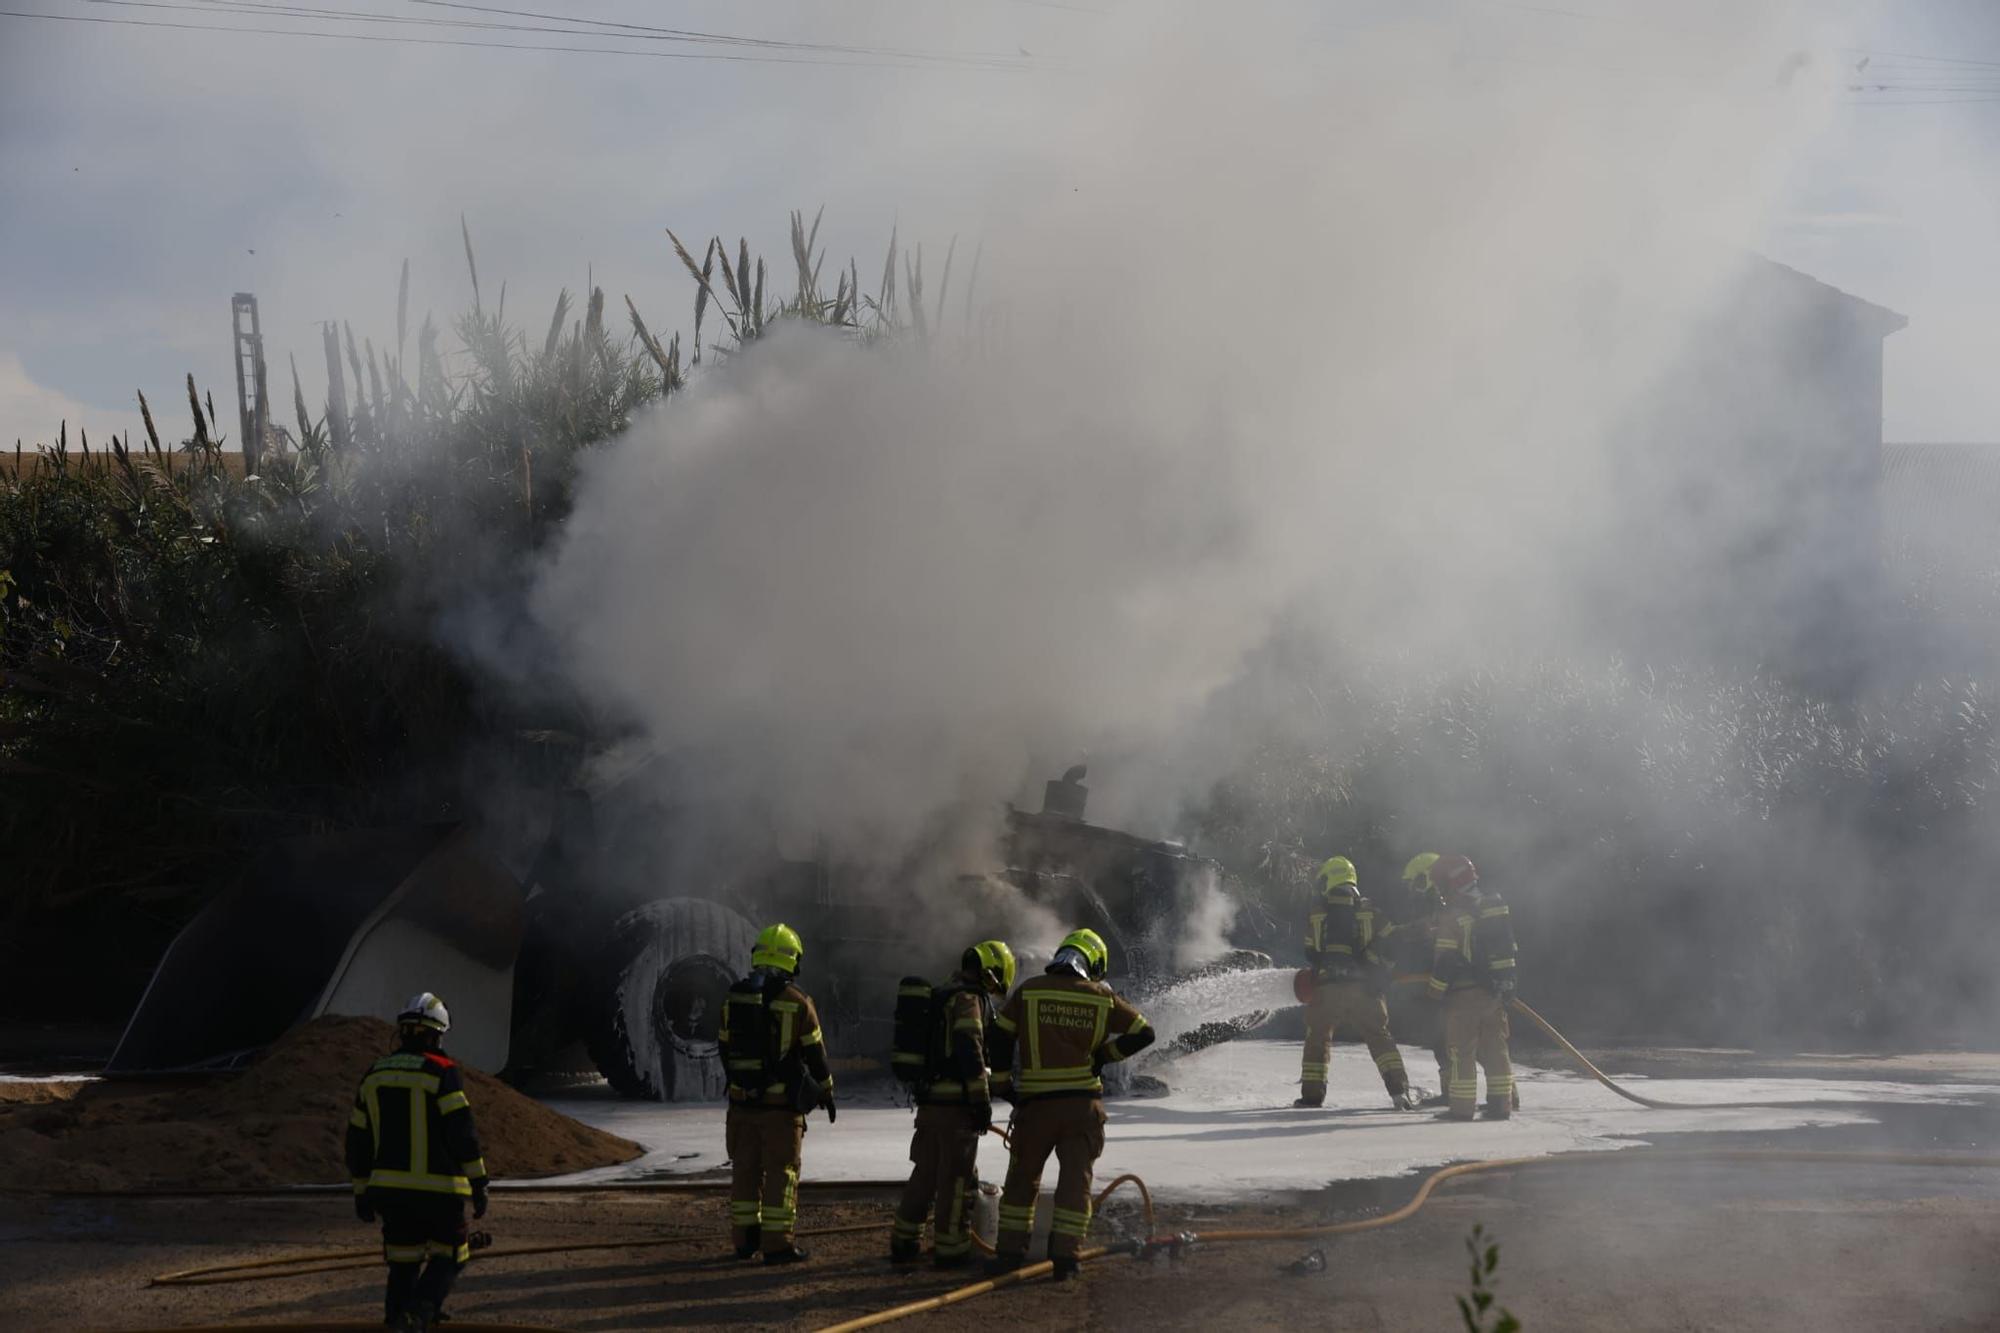 Incendio en Valencia hoy; arde una excavadora en Nazaret